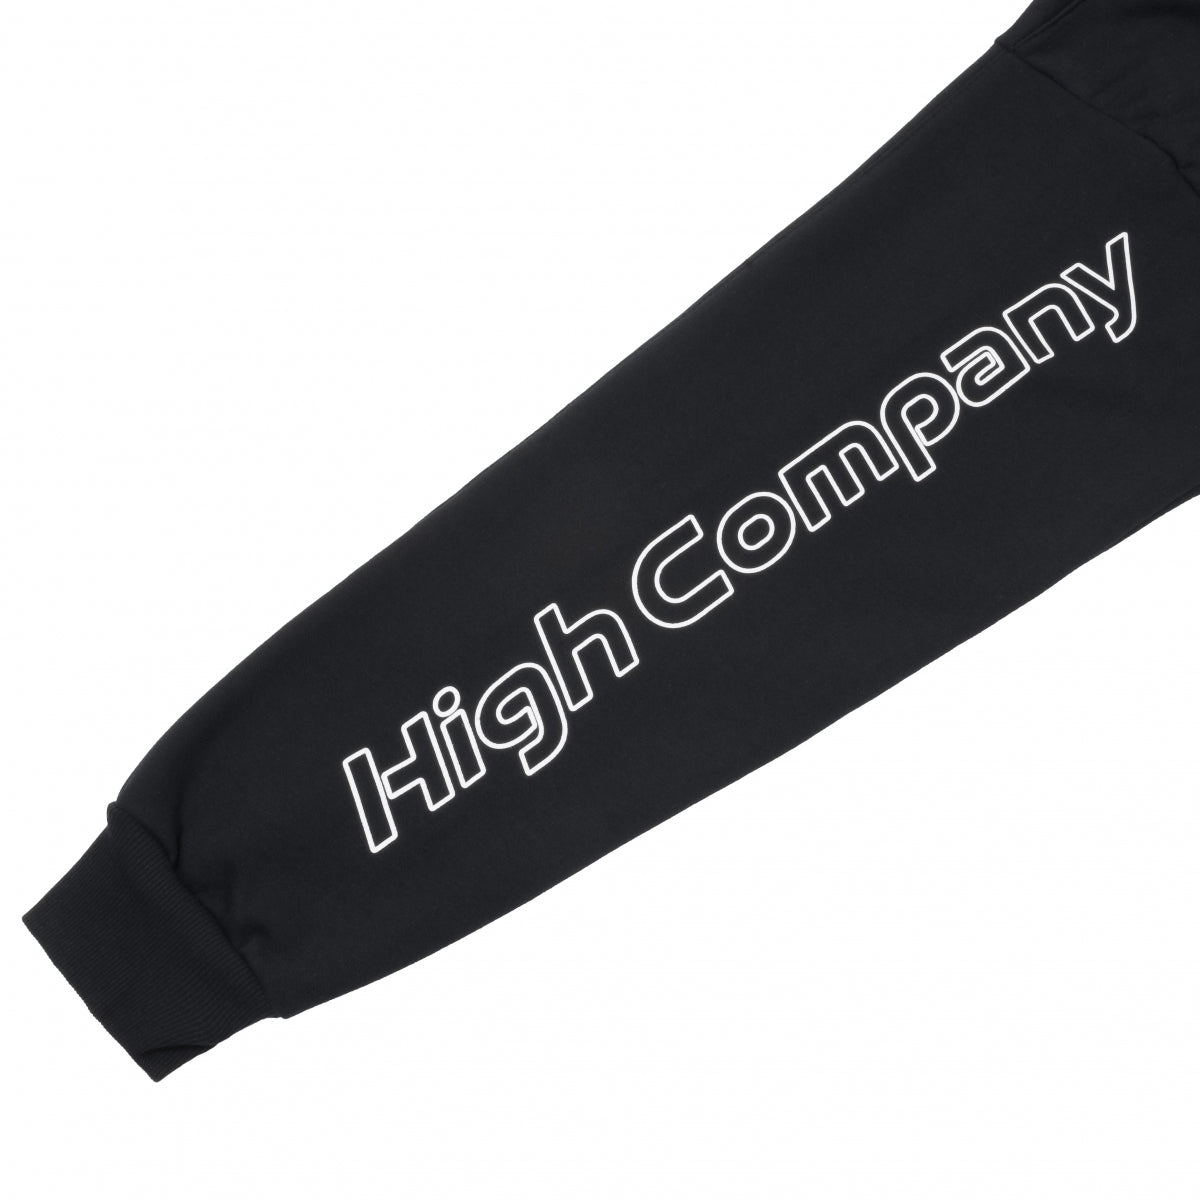 HIGH - Polo Sweatshirt Sportif Black - Slow Office